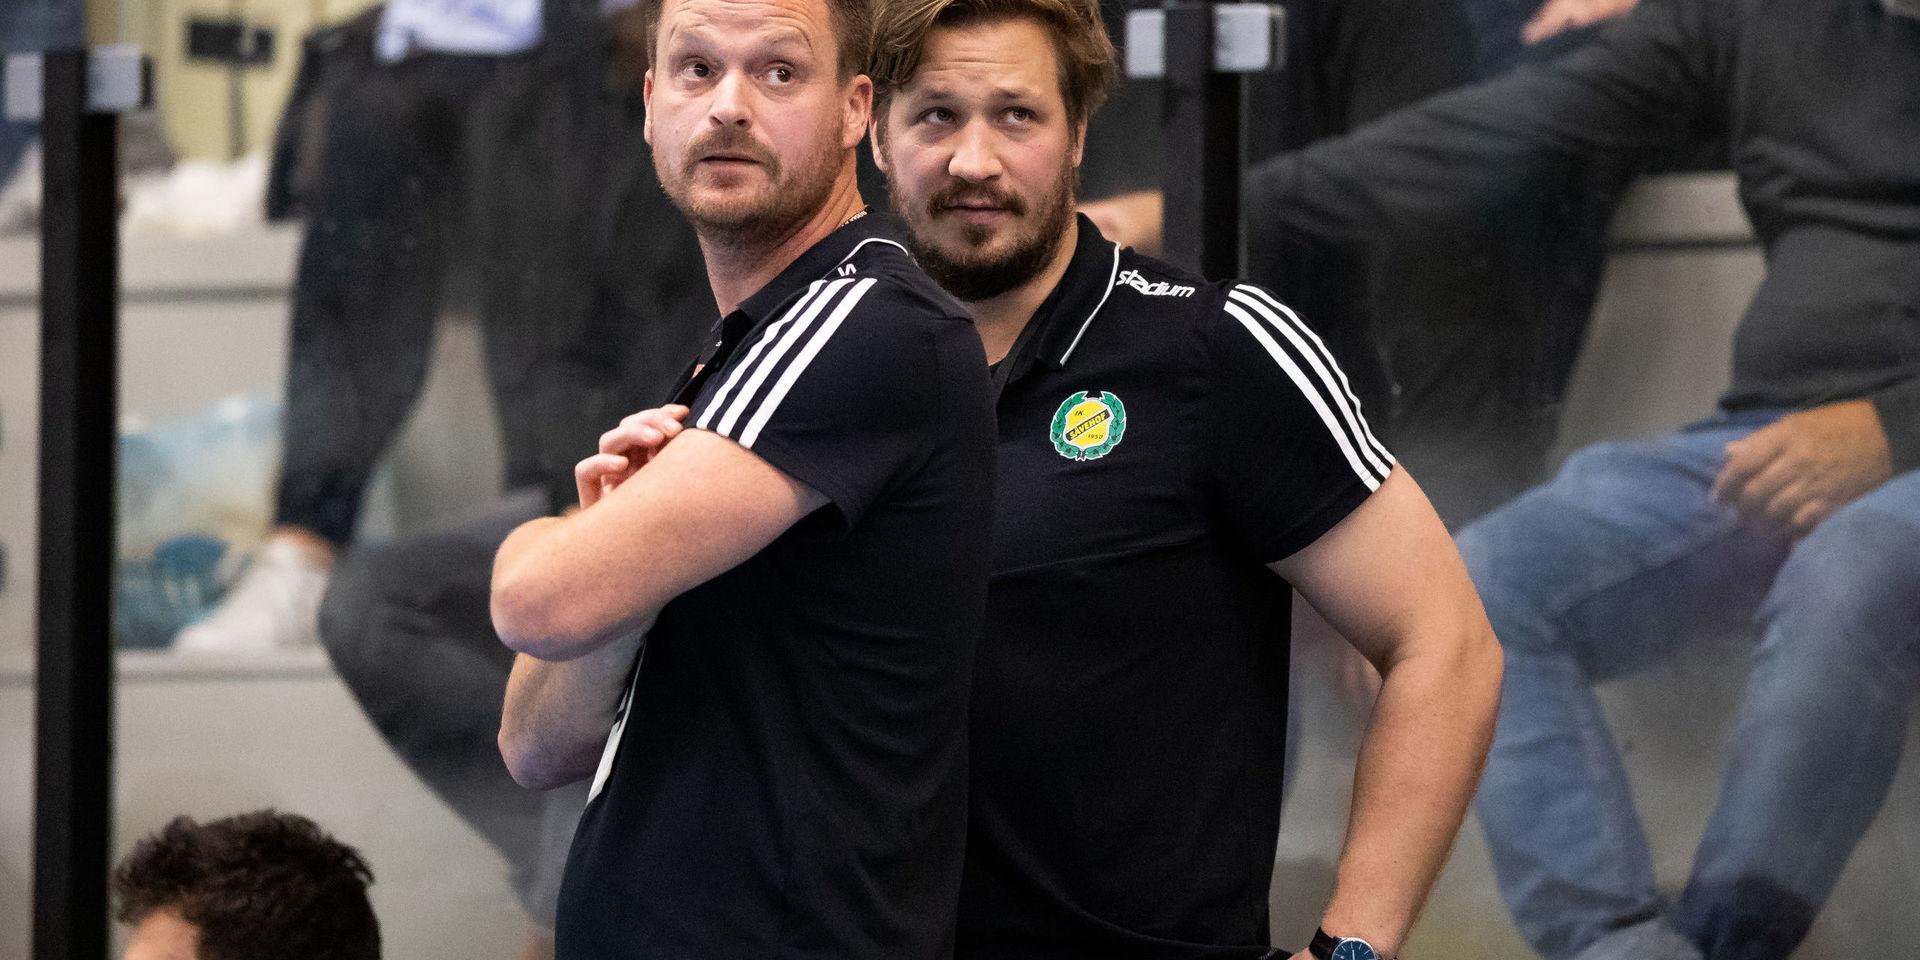 Sävehofs tränare Kristian Berndtsson (vänster) får klara sig utan snus i Lissabon efter att hans bagage försvunnit i Bryssel. Desto bättre klarade sig sportchef Emil Berggren (höger).